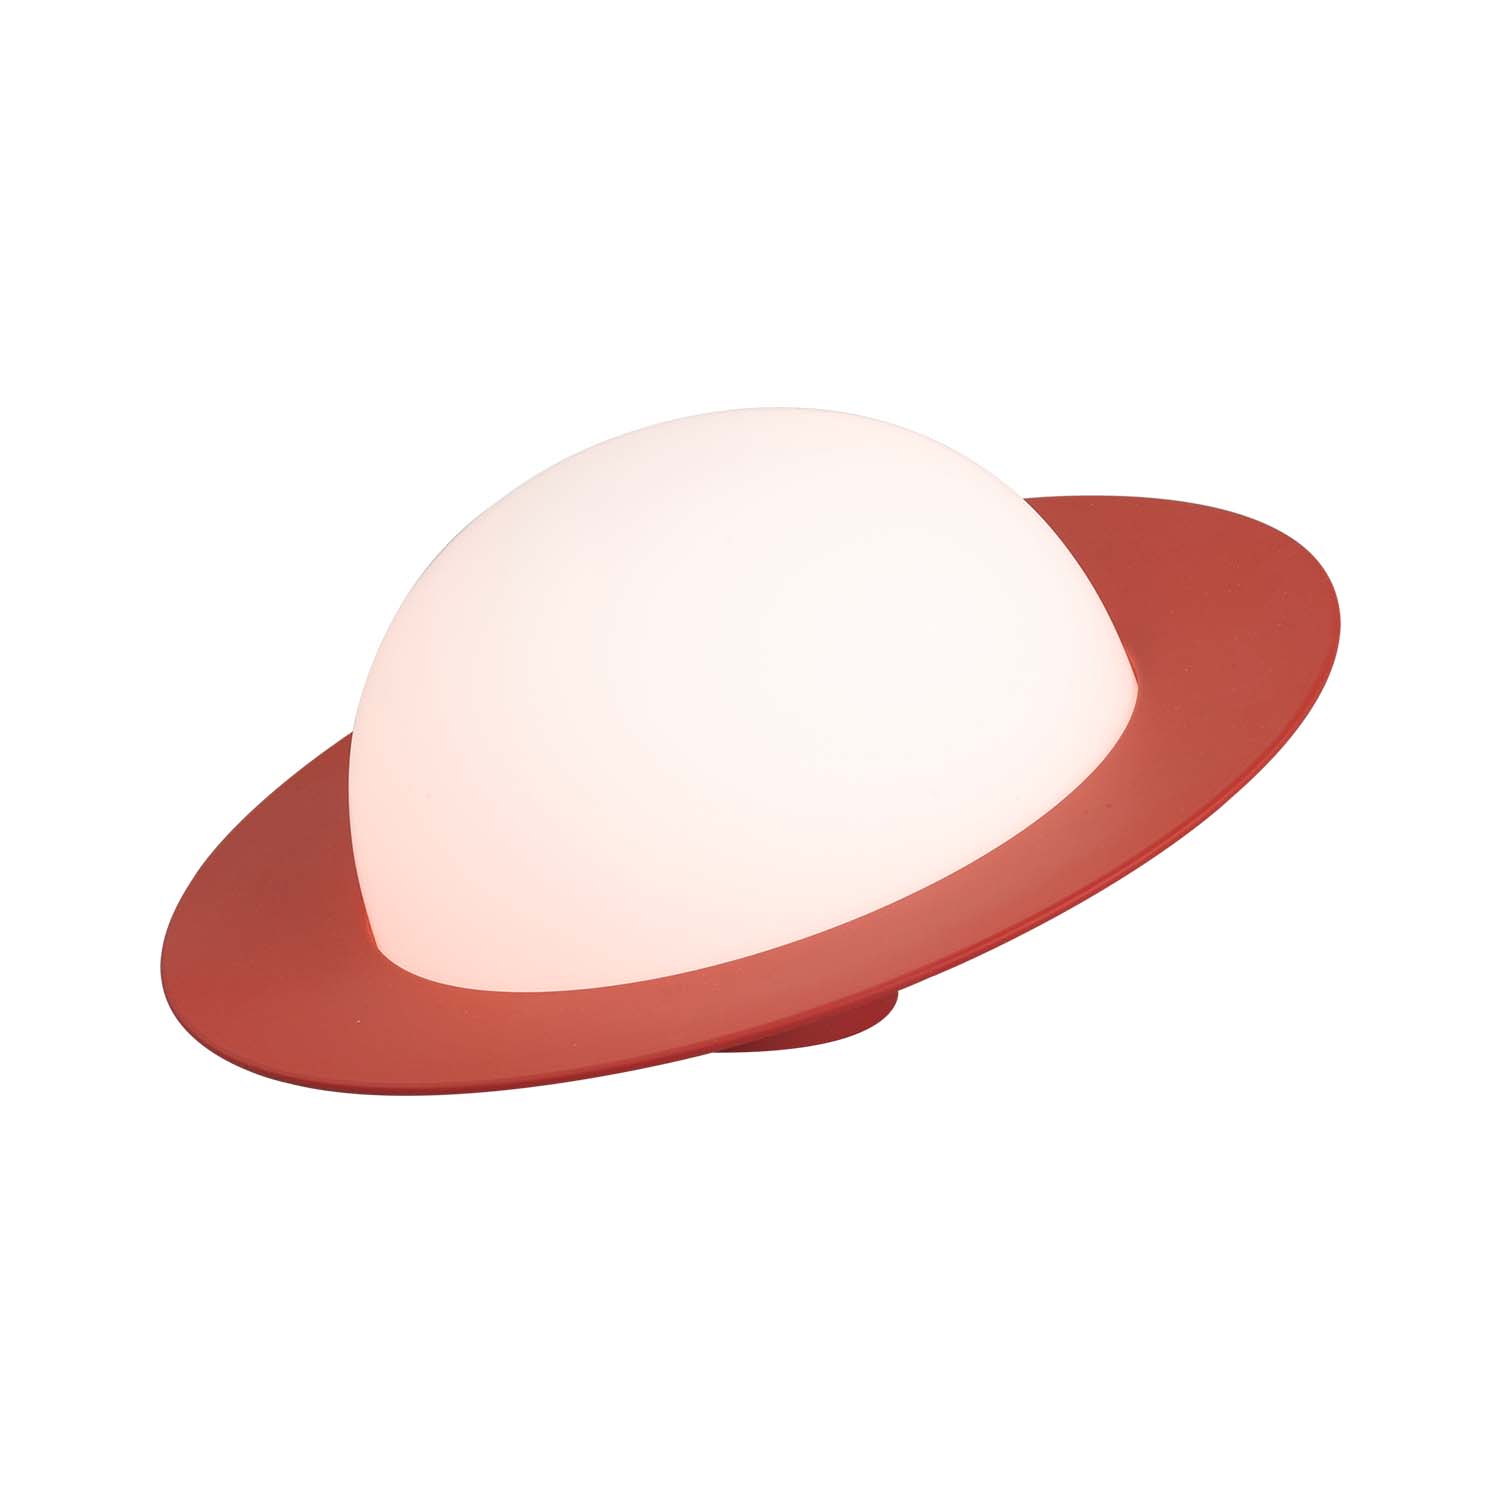 ALLEY – Design und farbenfrohe Tischlampe in Saturnform